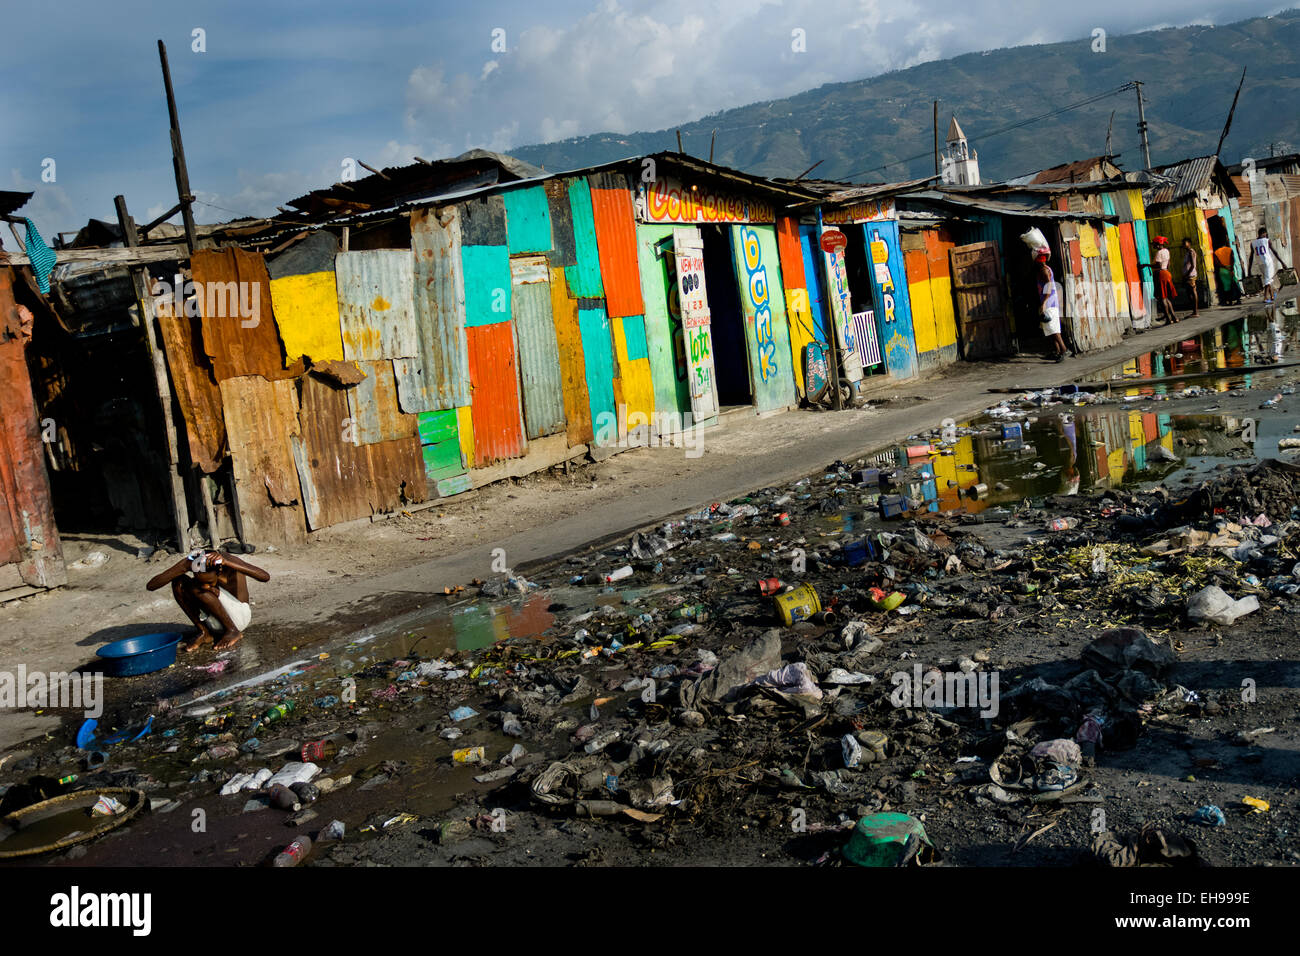 una-mujer-haitiana-se-bana-en-una-cuchara-fuera-de-casas-de-chapa-en-un-barrio-de-chabolas-cercano-al-mercado-de-la-saline-port-au-prince-haiti-eh999e.jpg